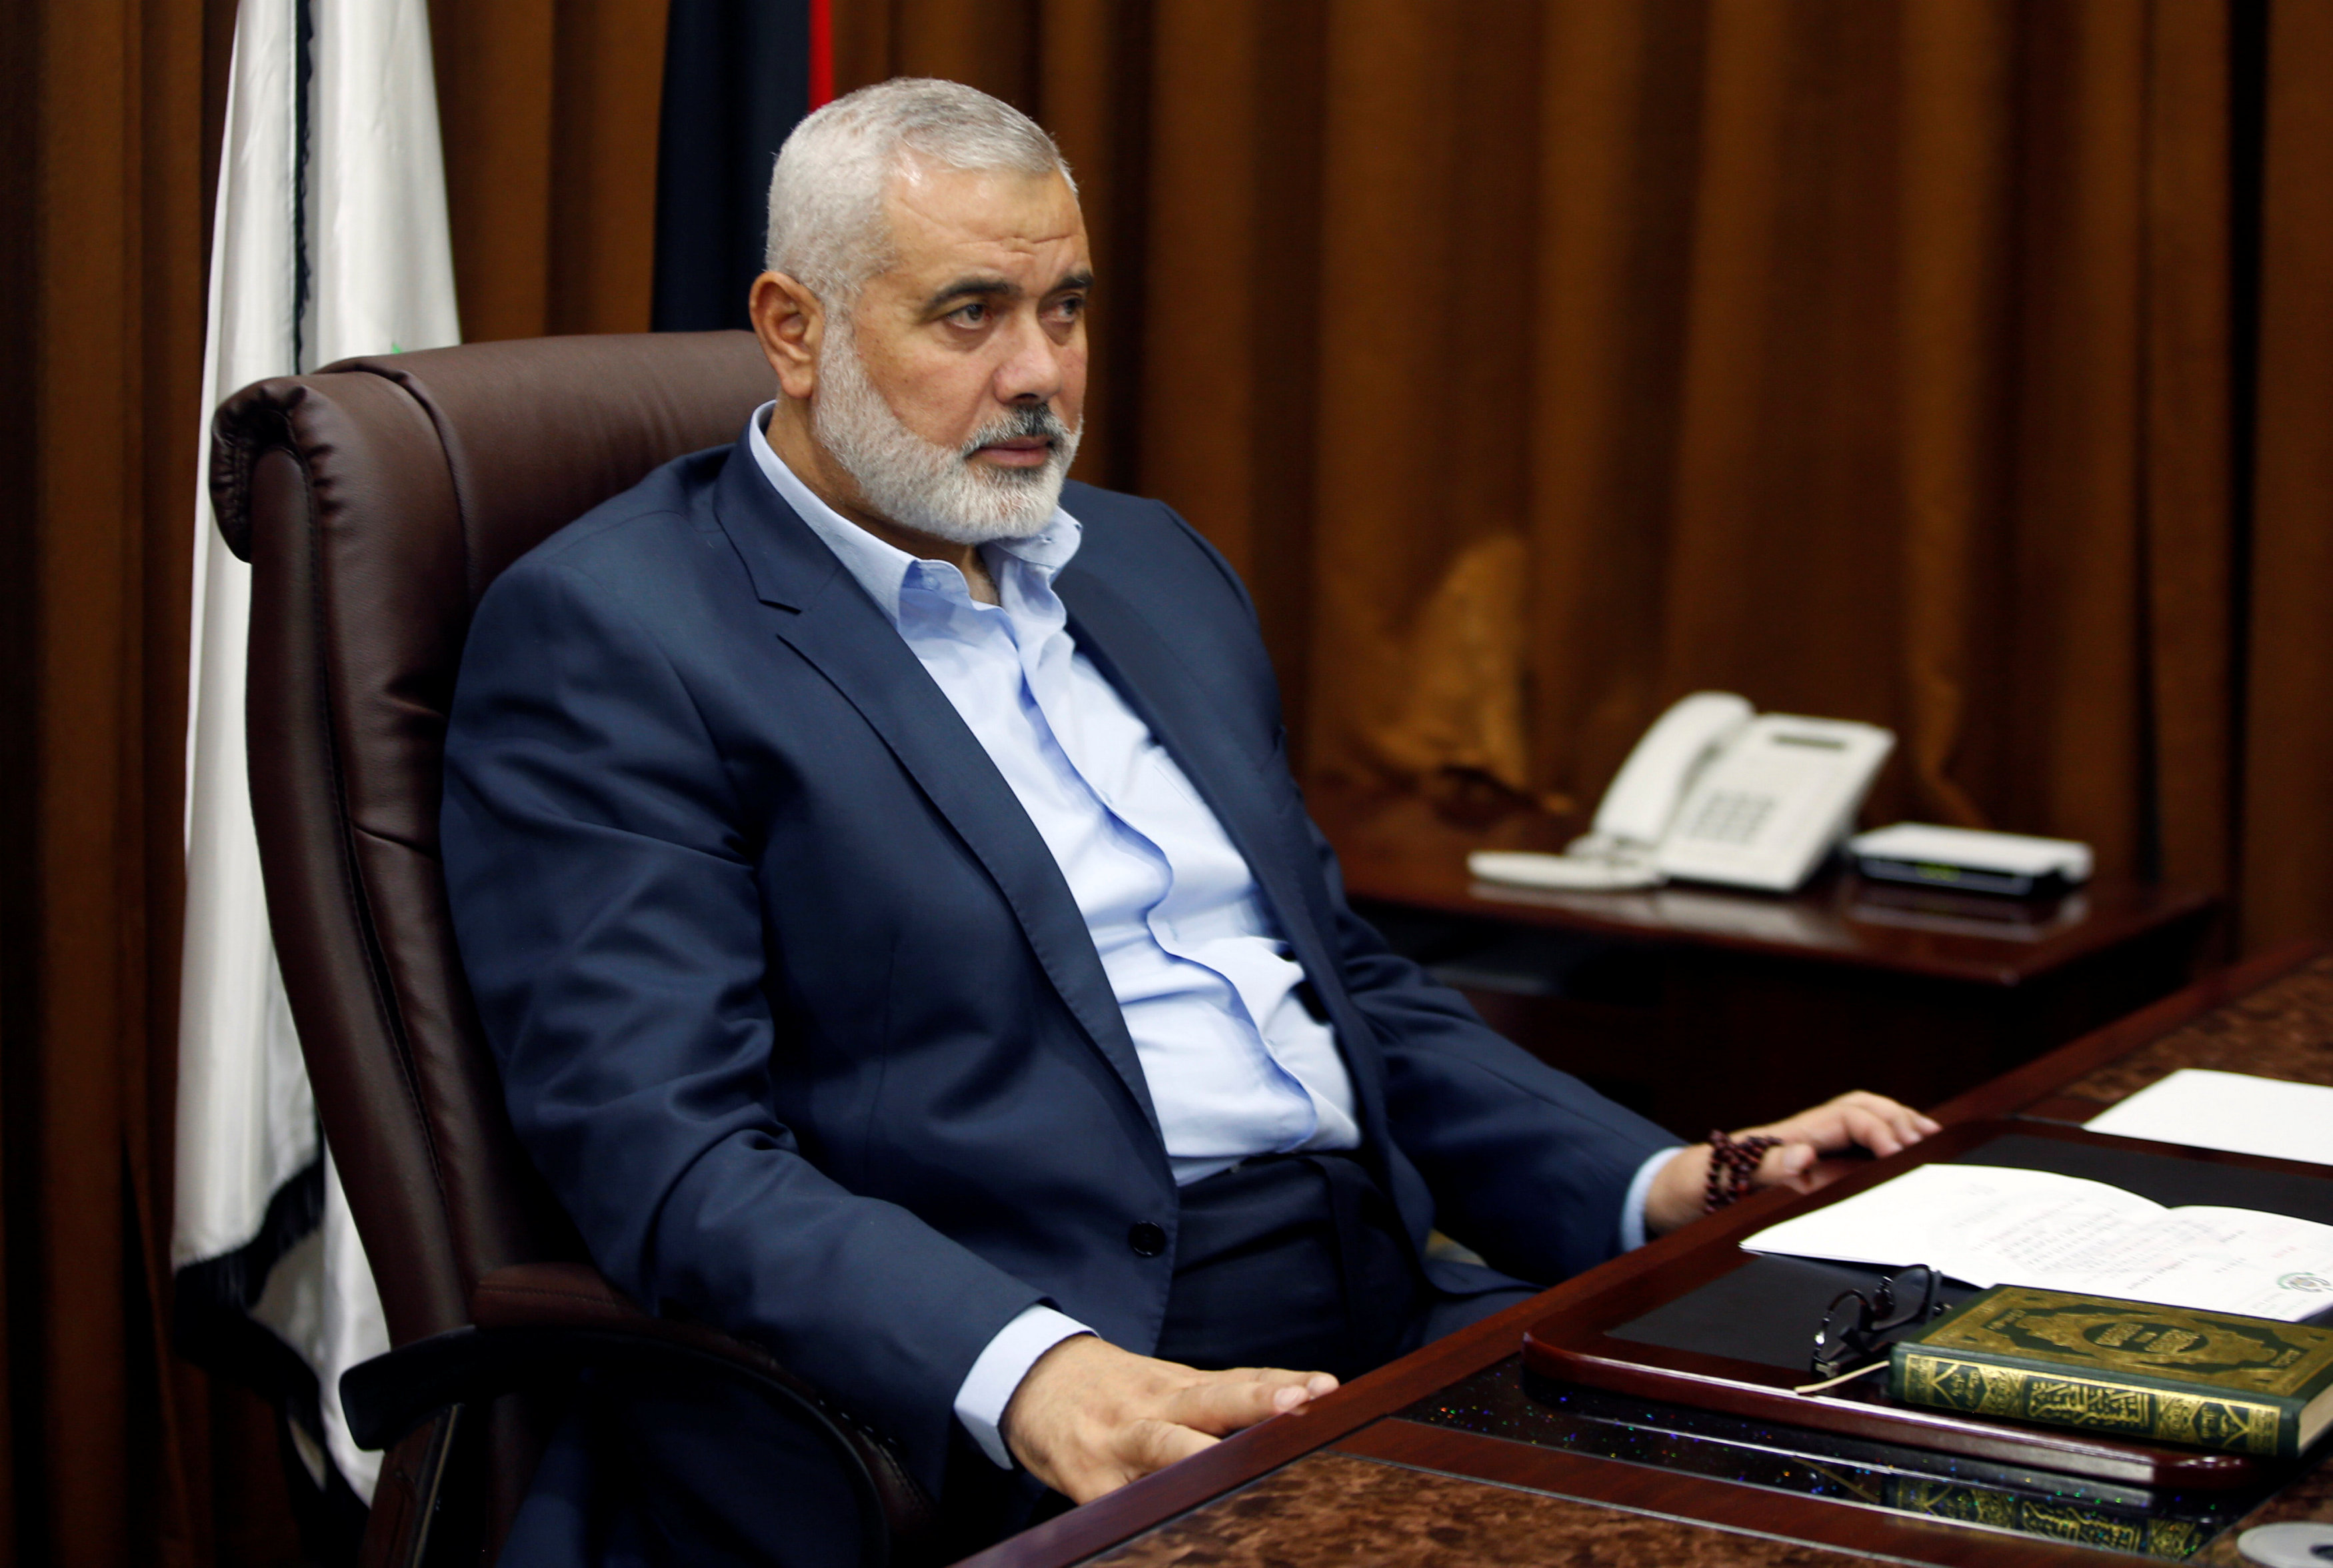 إسماعيل هنية رئيس المكتب السياسى لحركة حماس